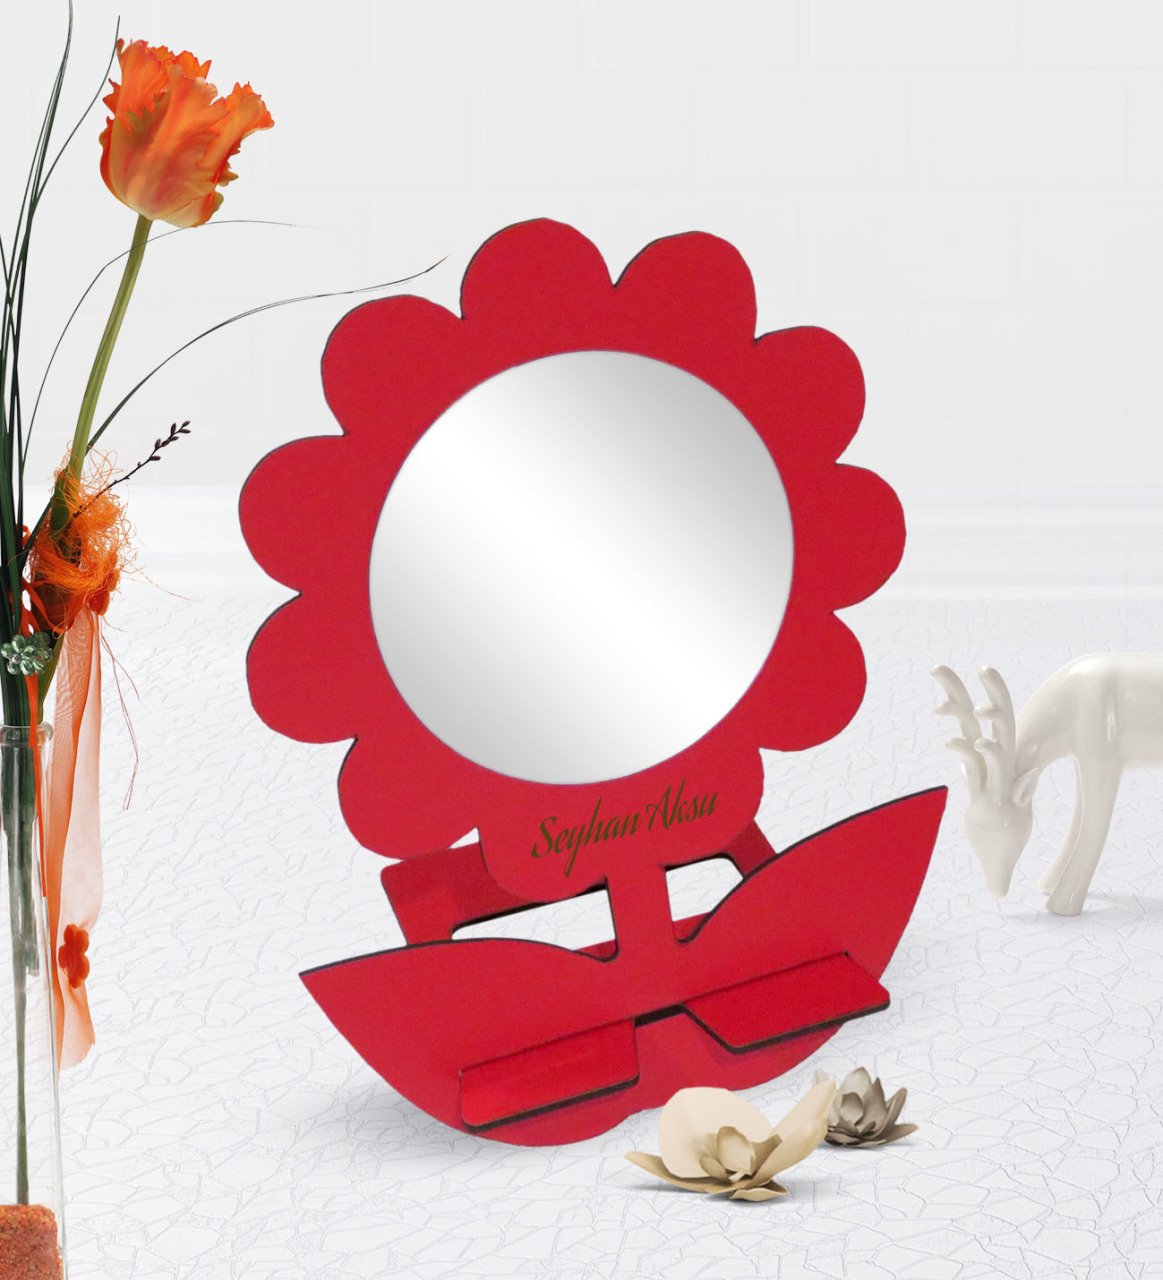 Kişiye Özel Kırmızı Papatya Tasarımlı Ahşap Masa ve Makyaj Aynası